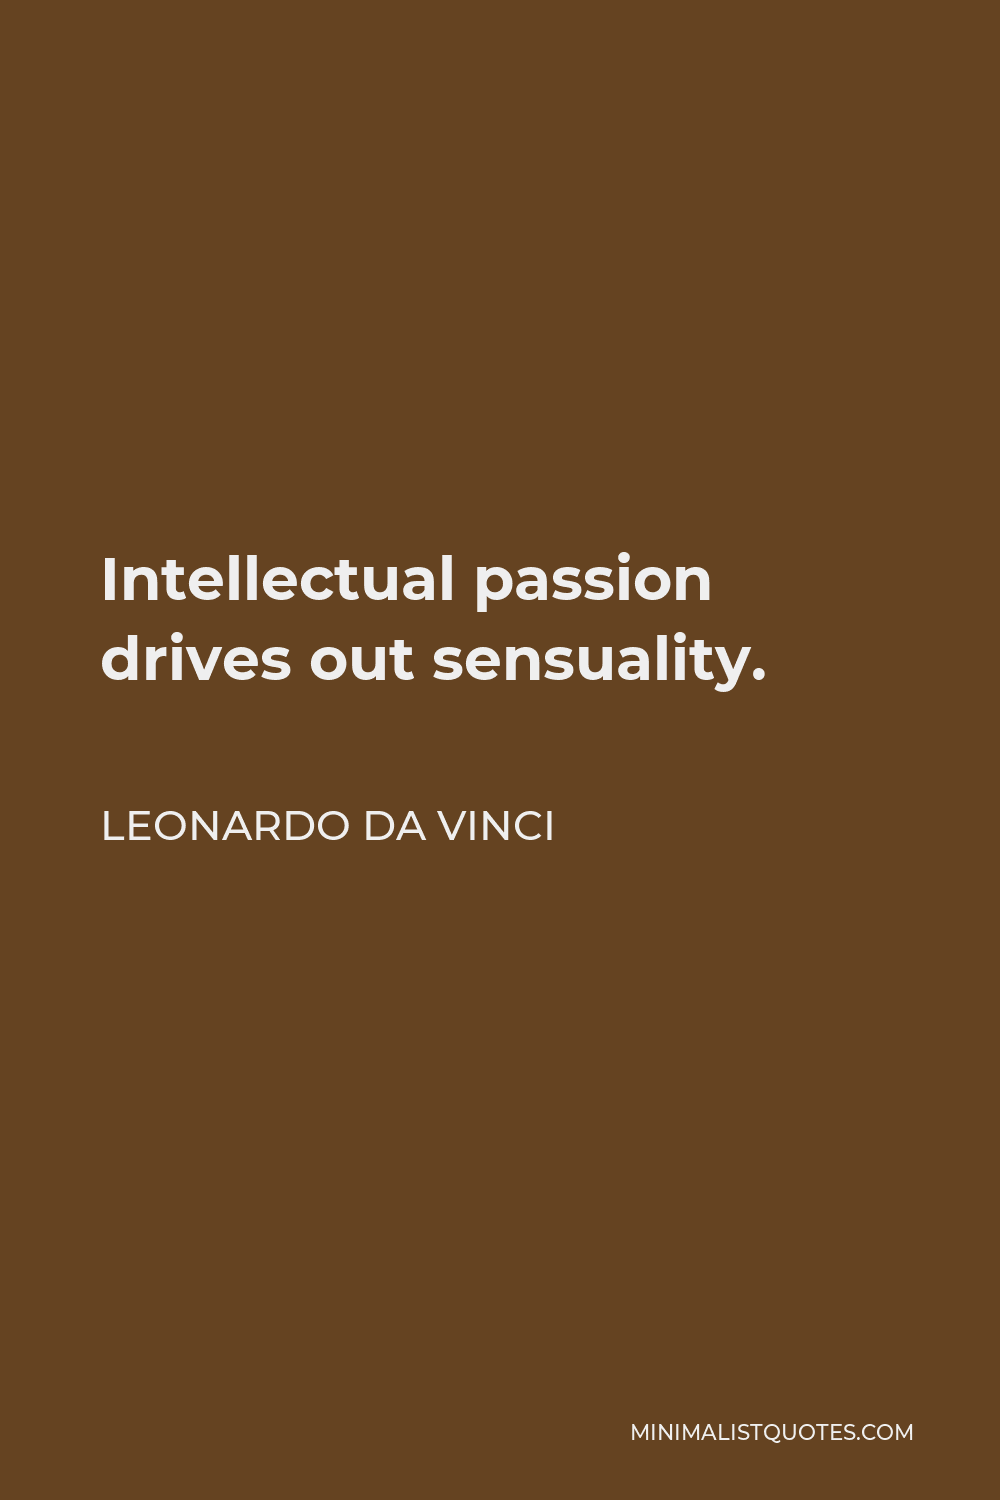 Leonardo da Vinci Quote - Intellectual passion drives out sensuality.